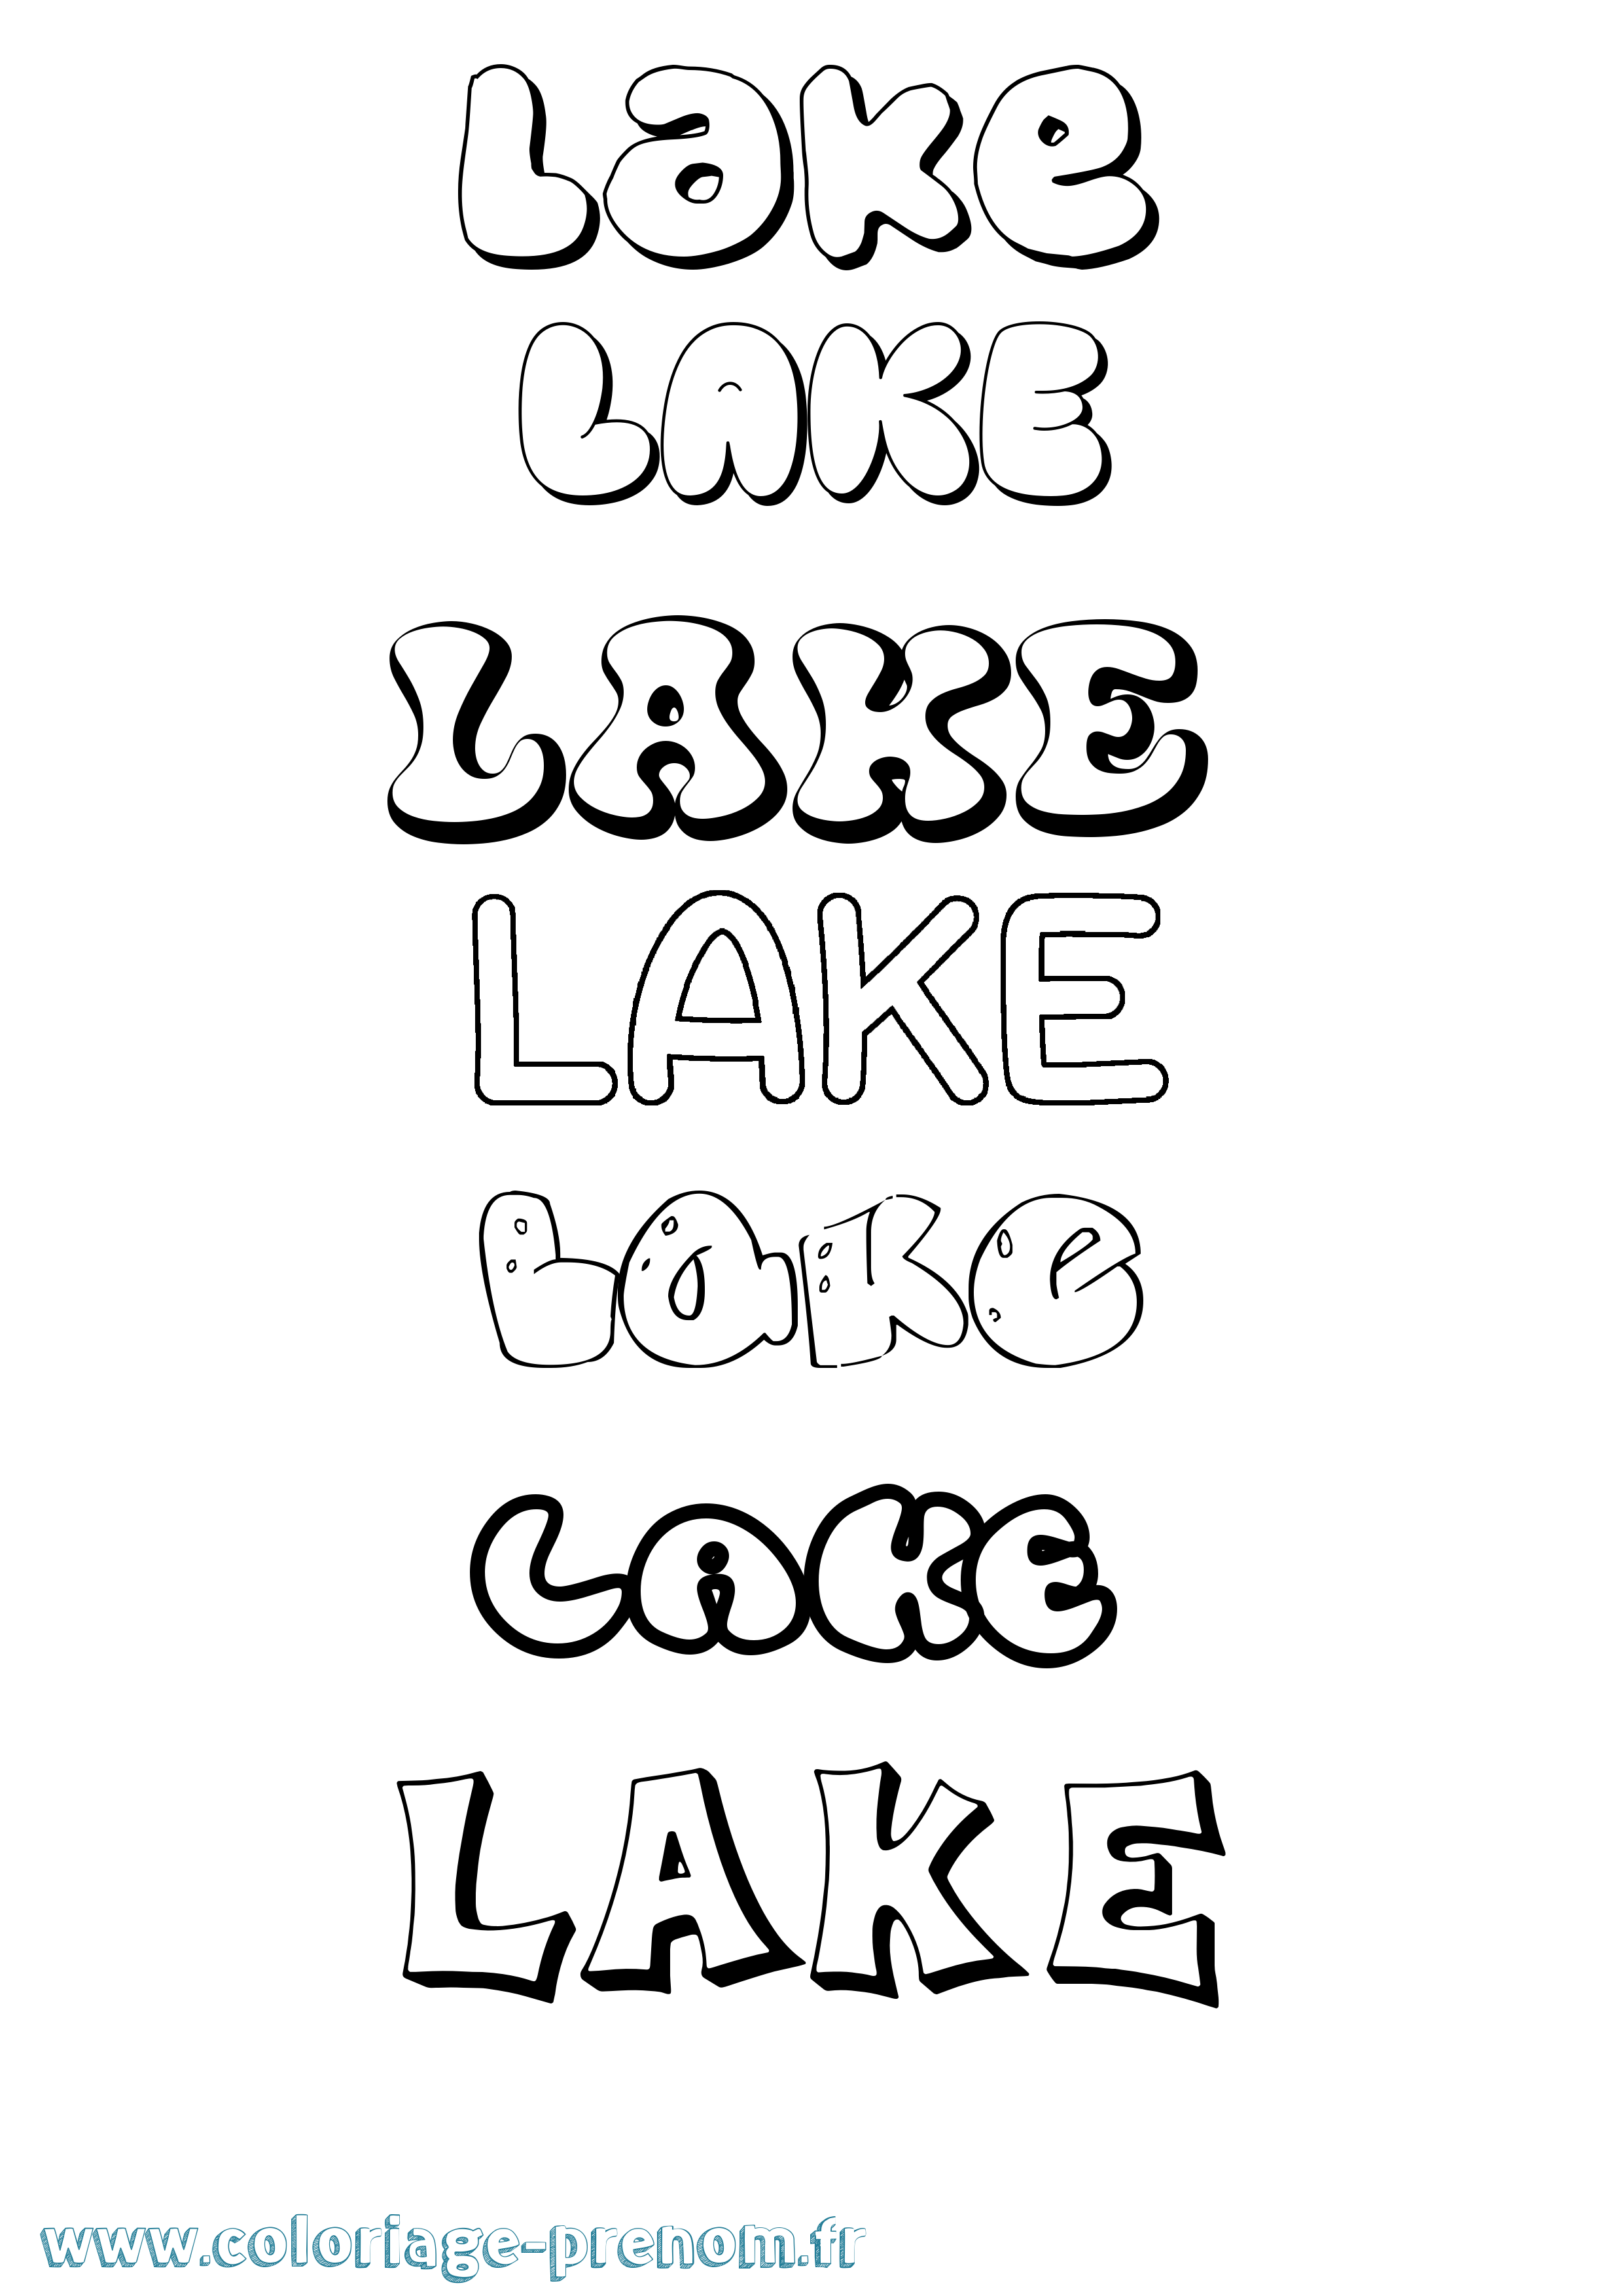 Coloriage prénom Lake Bubble